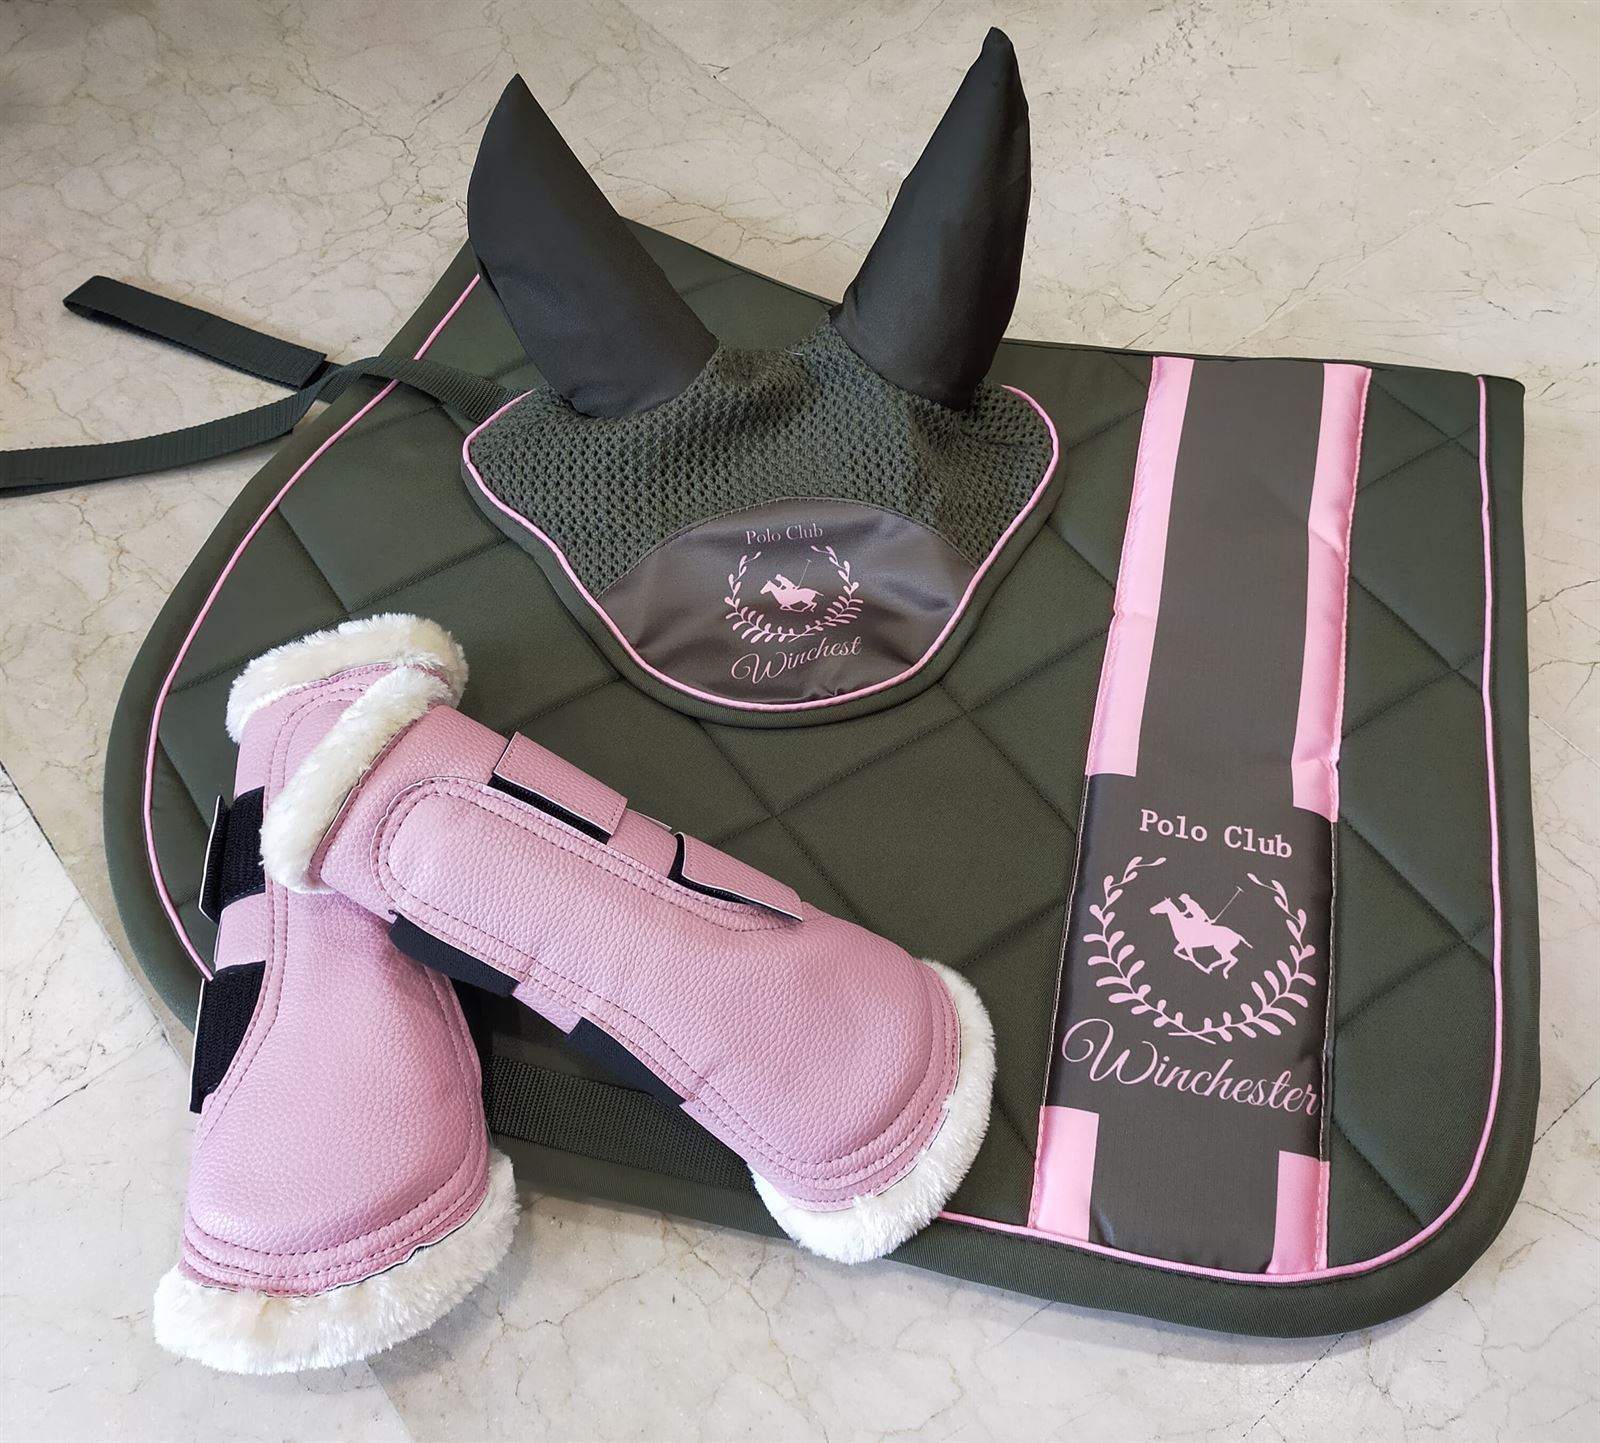 Protectores HKM Sports Equipment Comfort Premium Fur color rosa bebé TALLA M (par) - Imagen 2